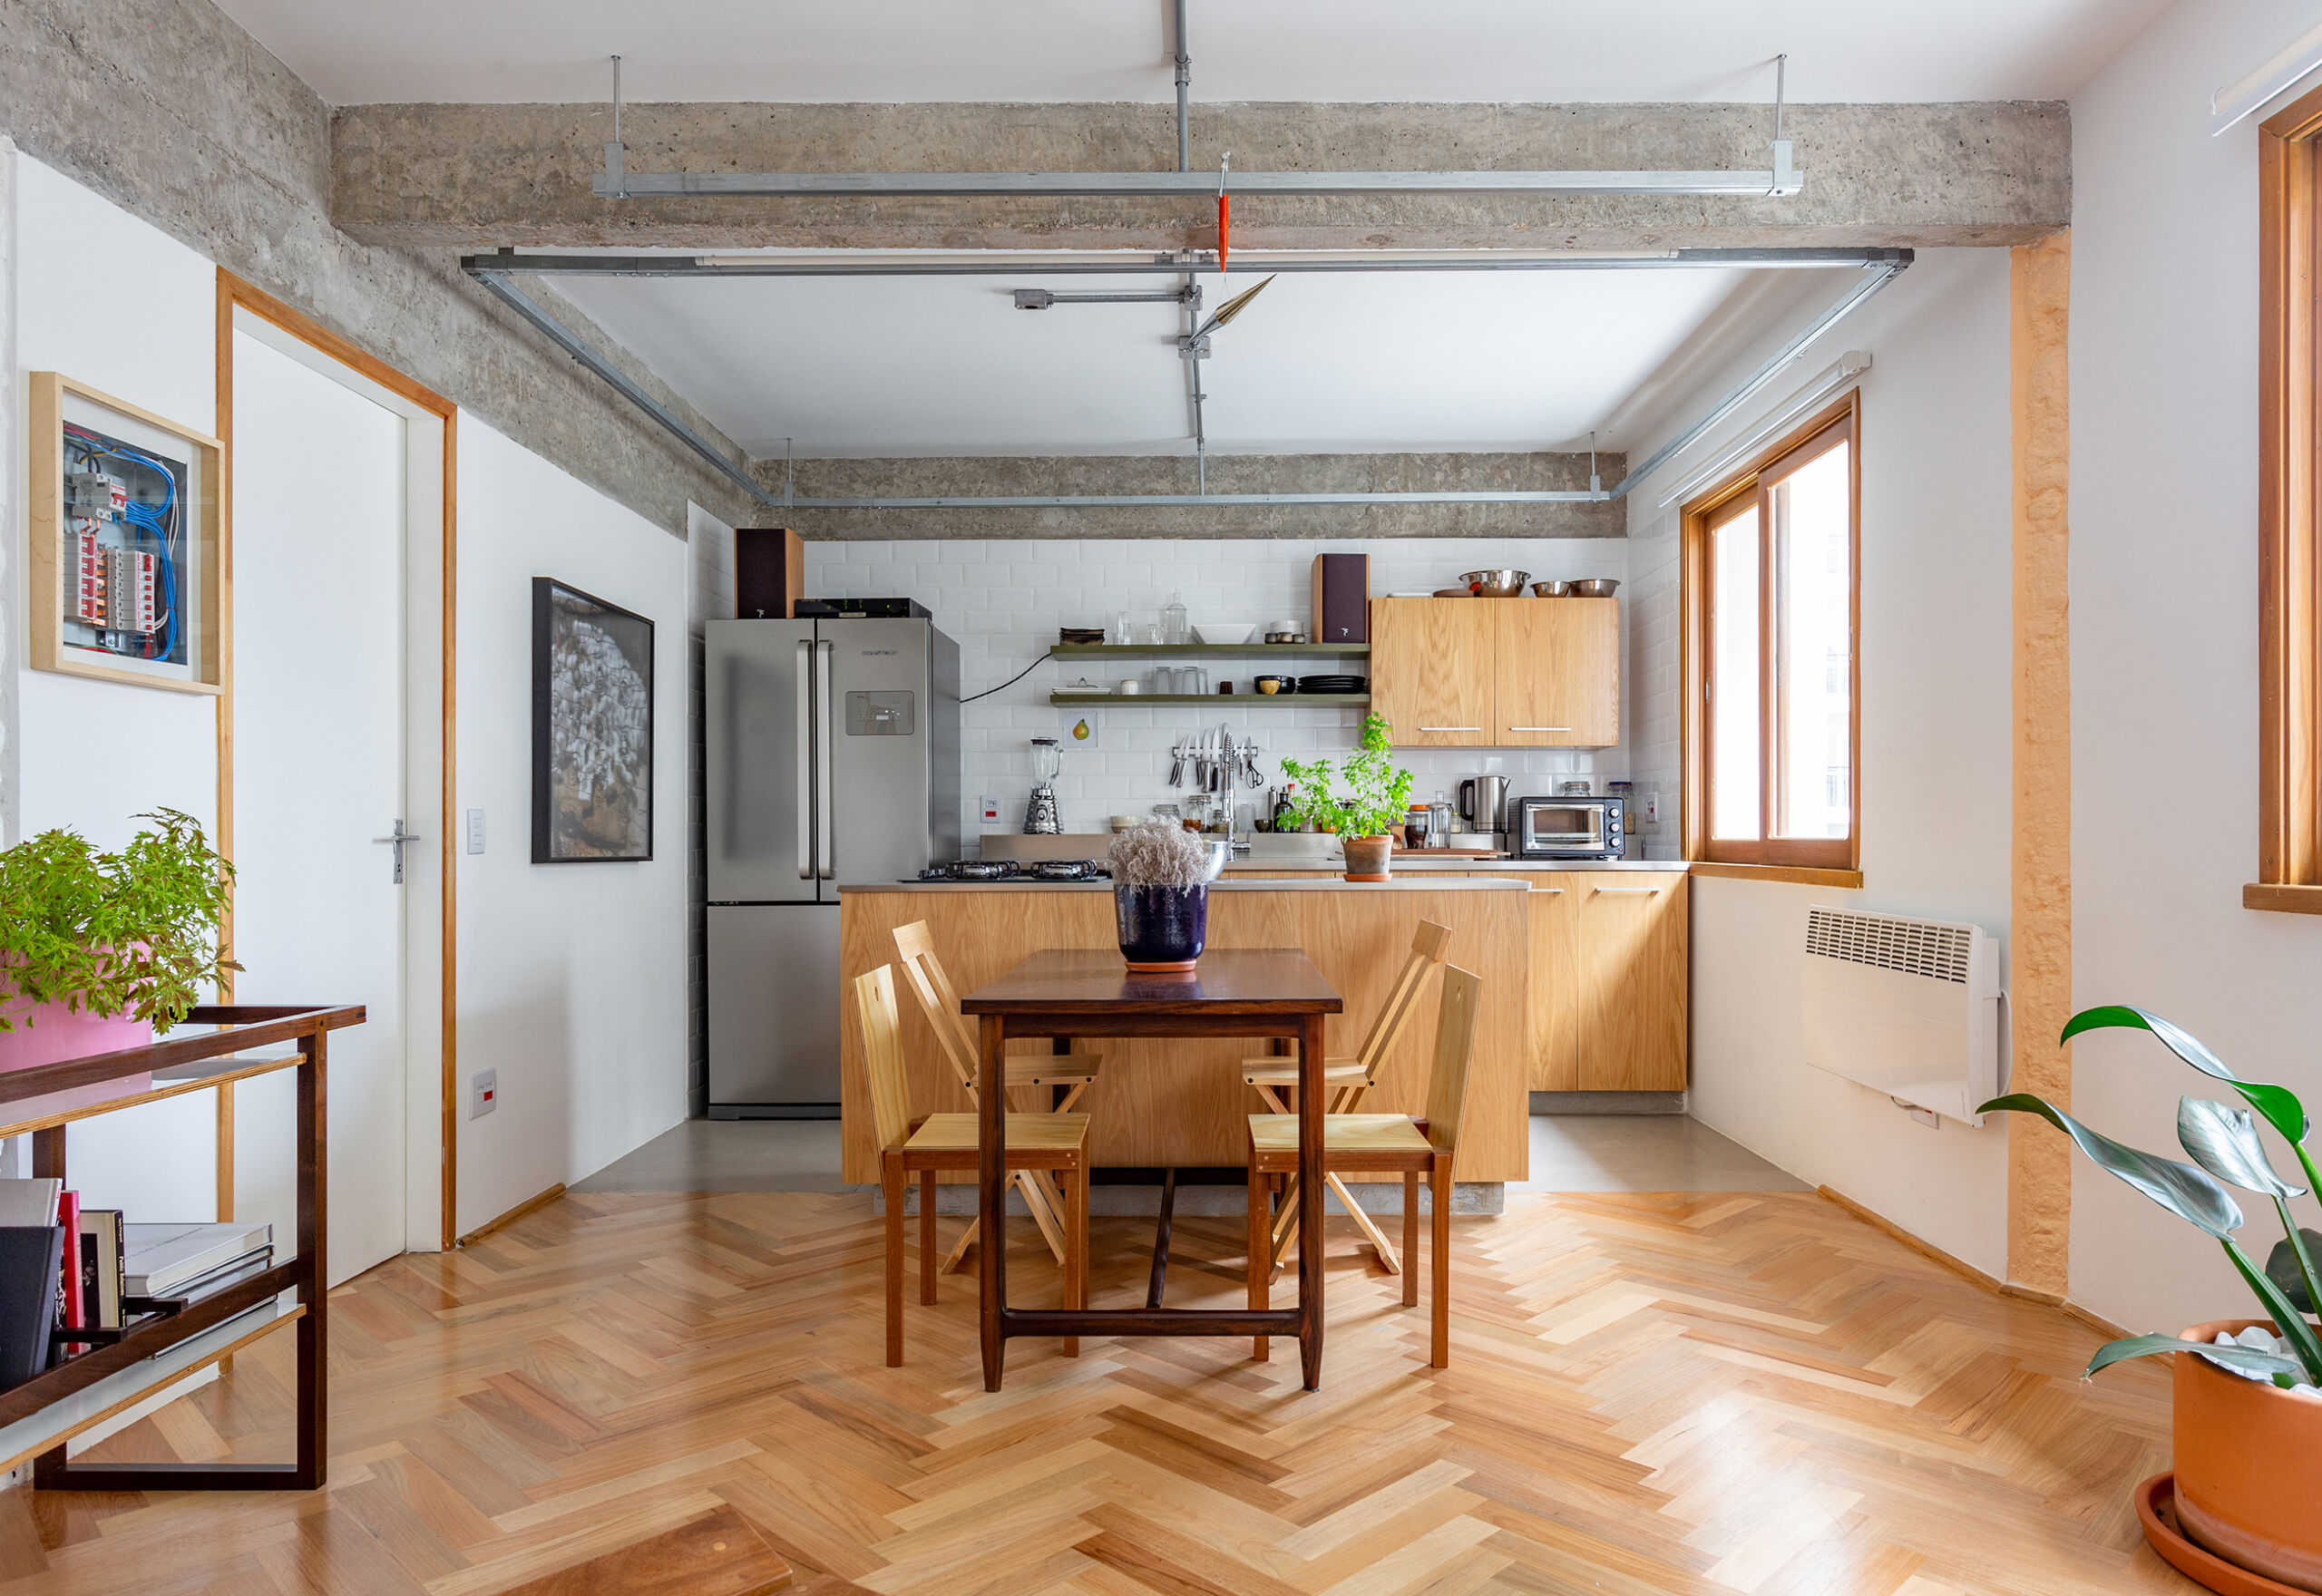 Apartamento modernista com arquitetura interessante e piso de madeira